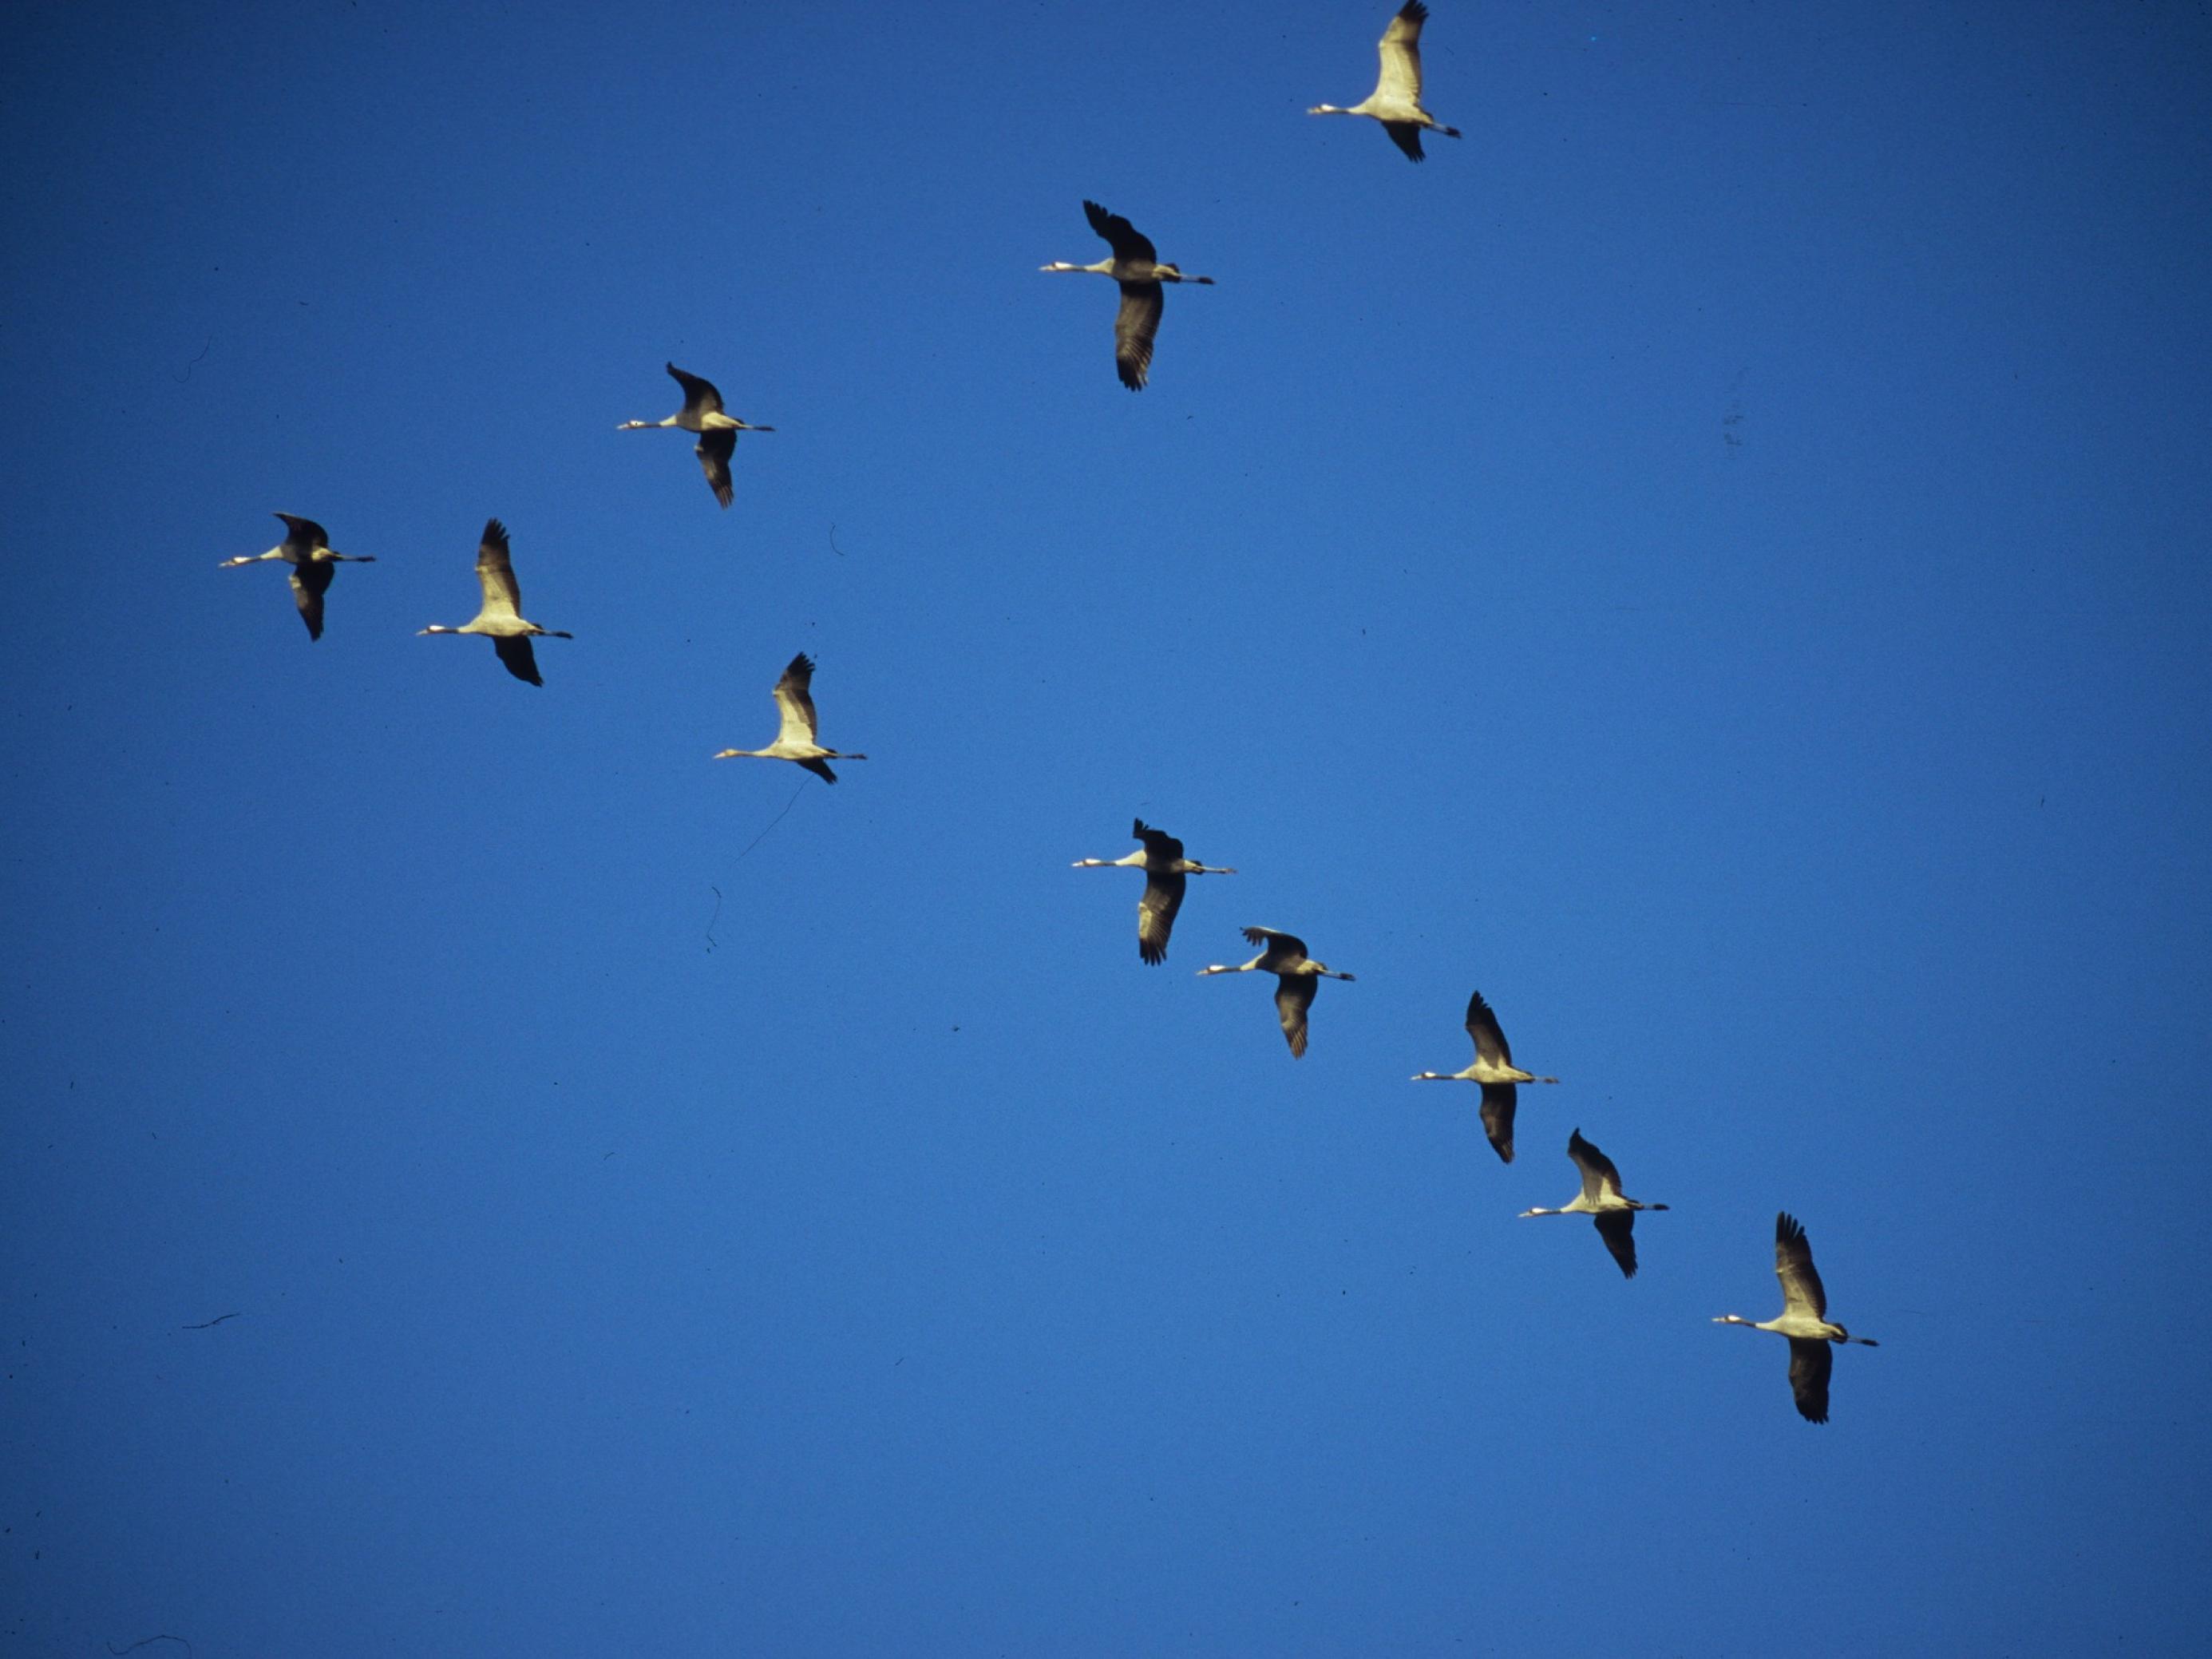 Kraniche im Flug, sie fliegen in einer sogenannten V-Formation mit einem Vogel an der Spitze. Das spart Energie, weil ein Vogel in Windschatten des anderen fliegen kann.